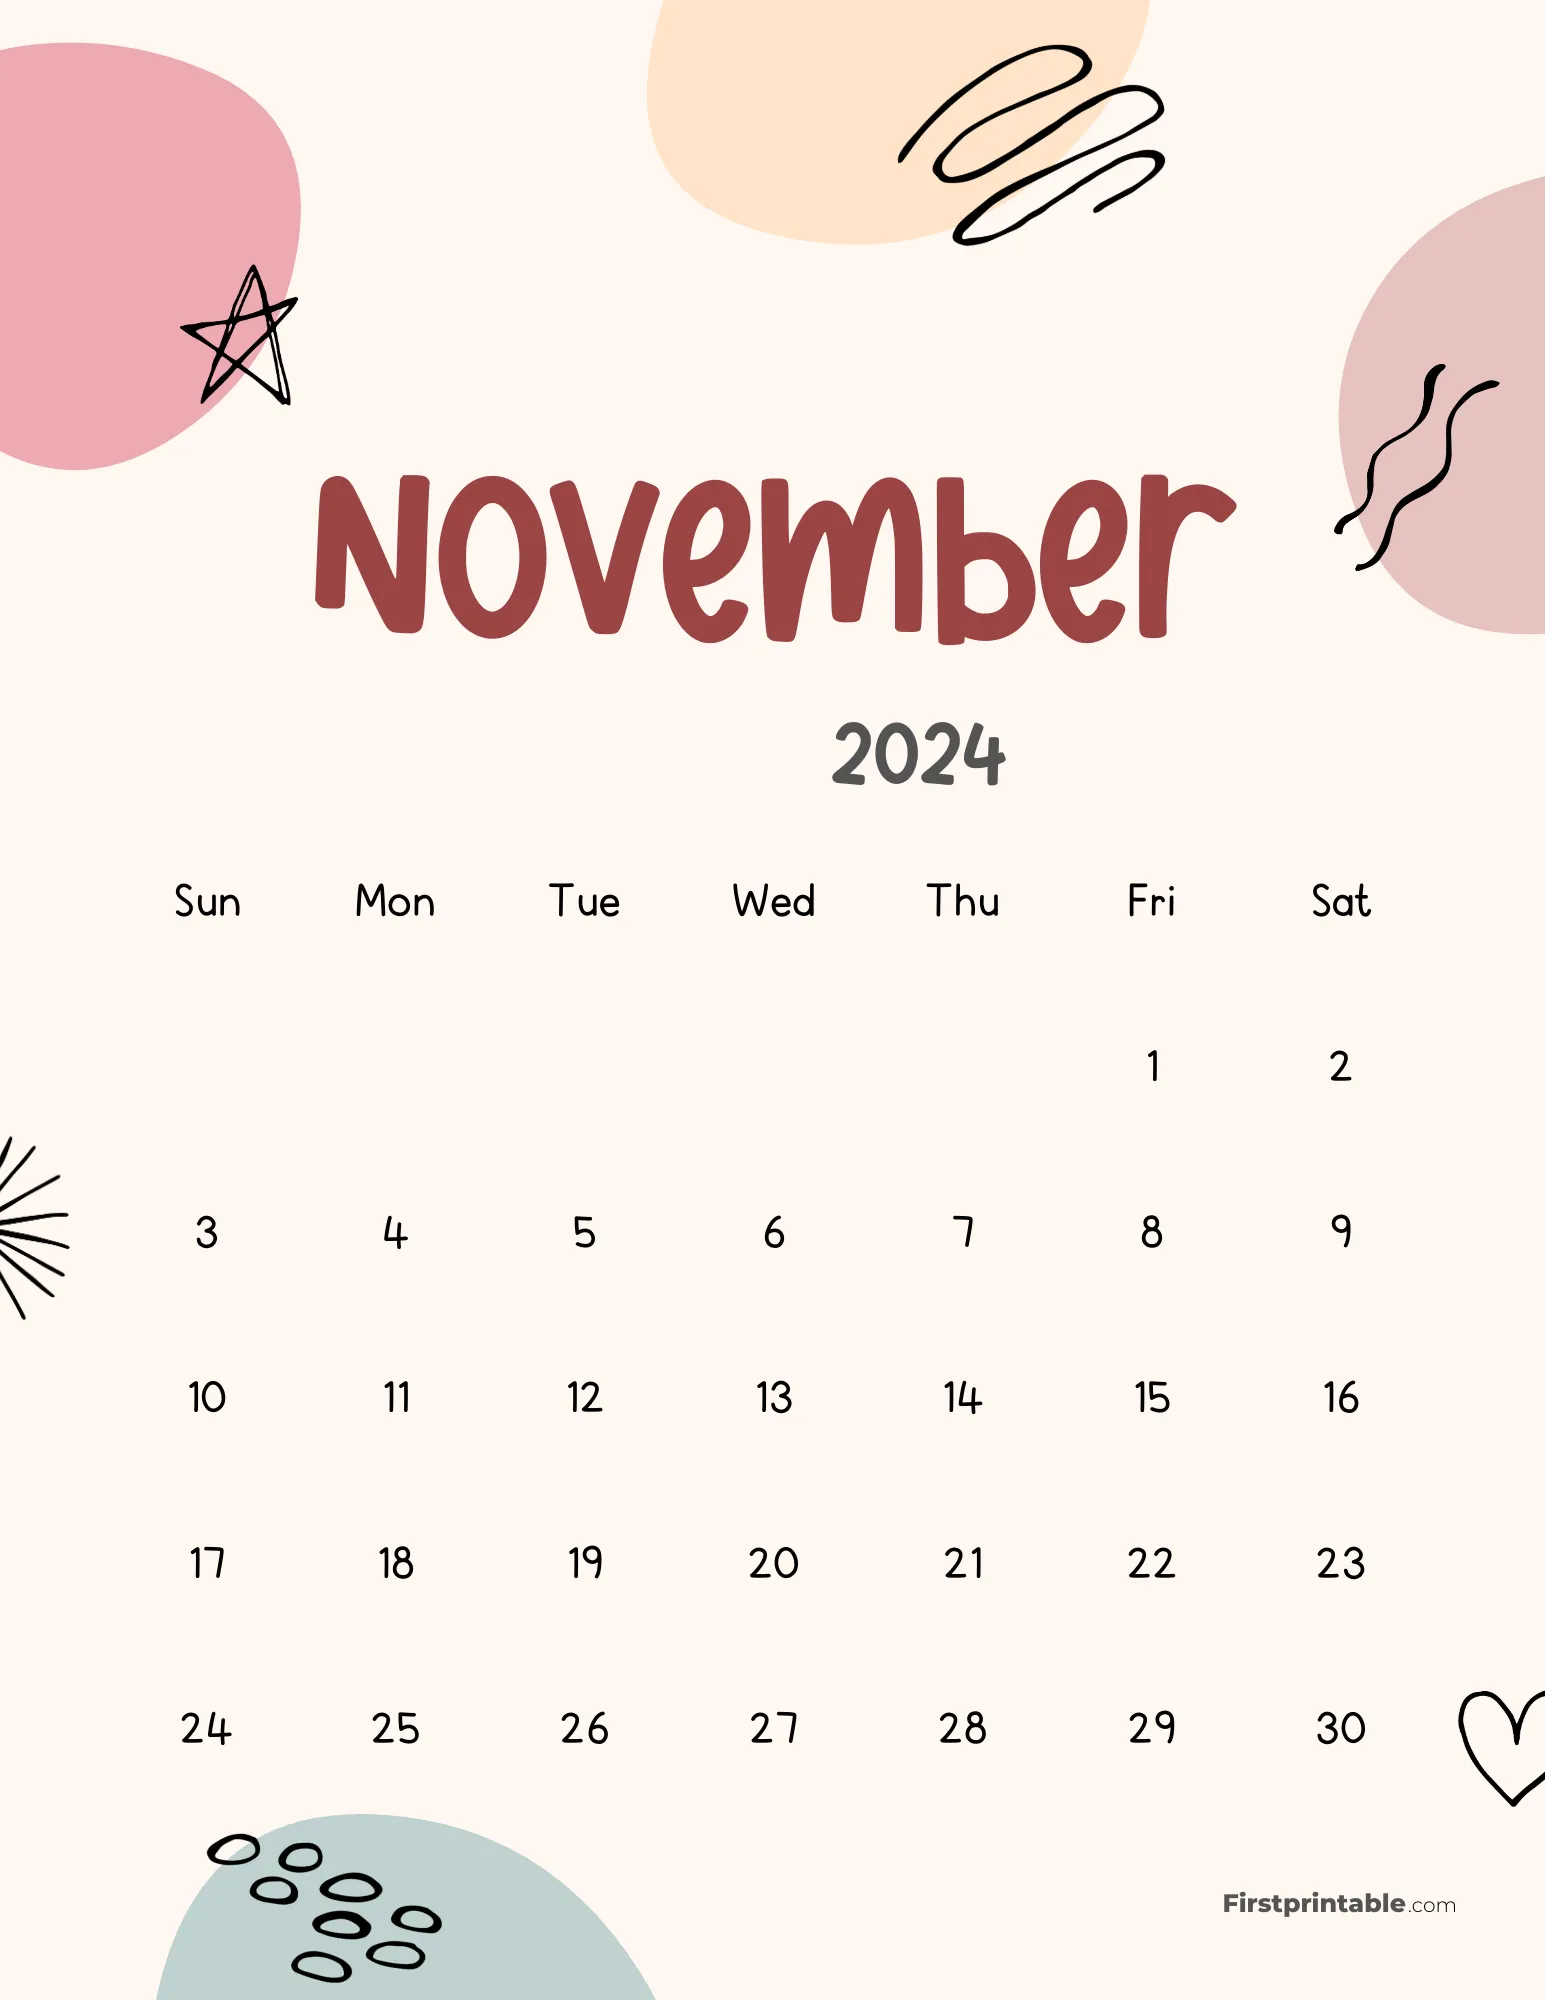 November 2024 Cute Abstract Calendar - Aesthetic Design